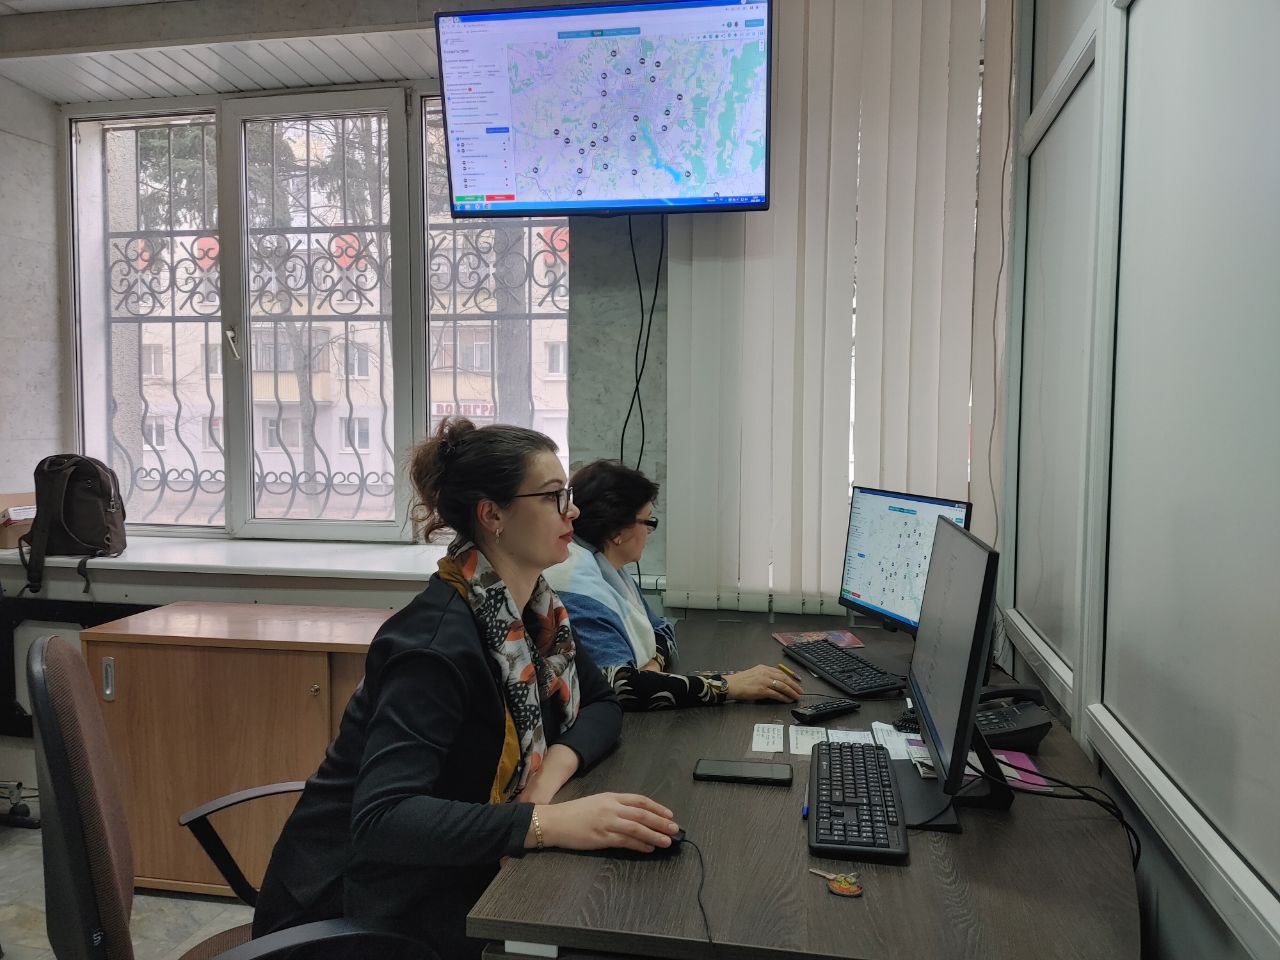 В Белгородском районе запустили оперативную диспетчерскую службу по работе коммунальной техники